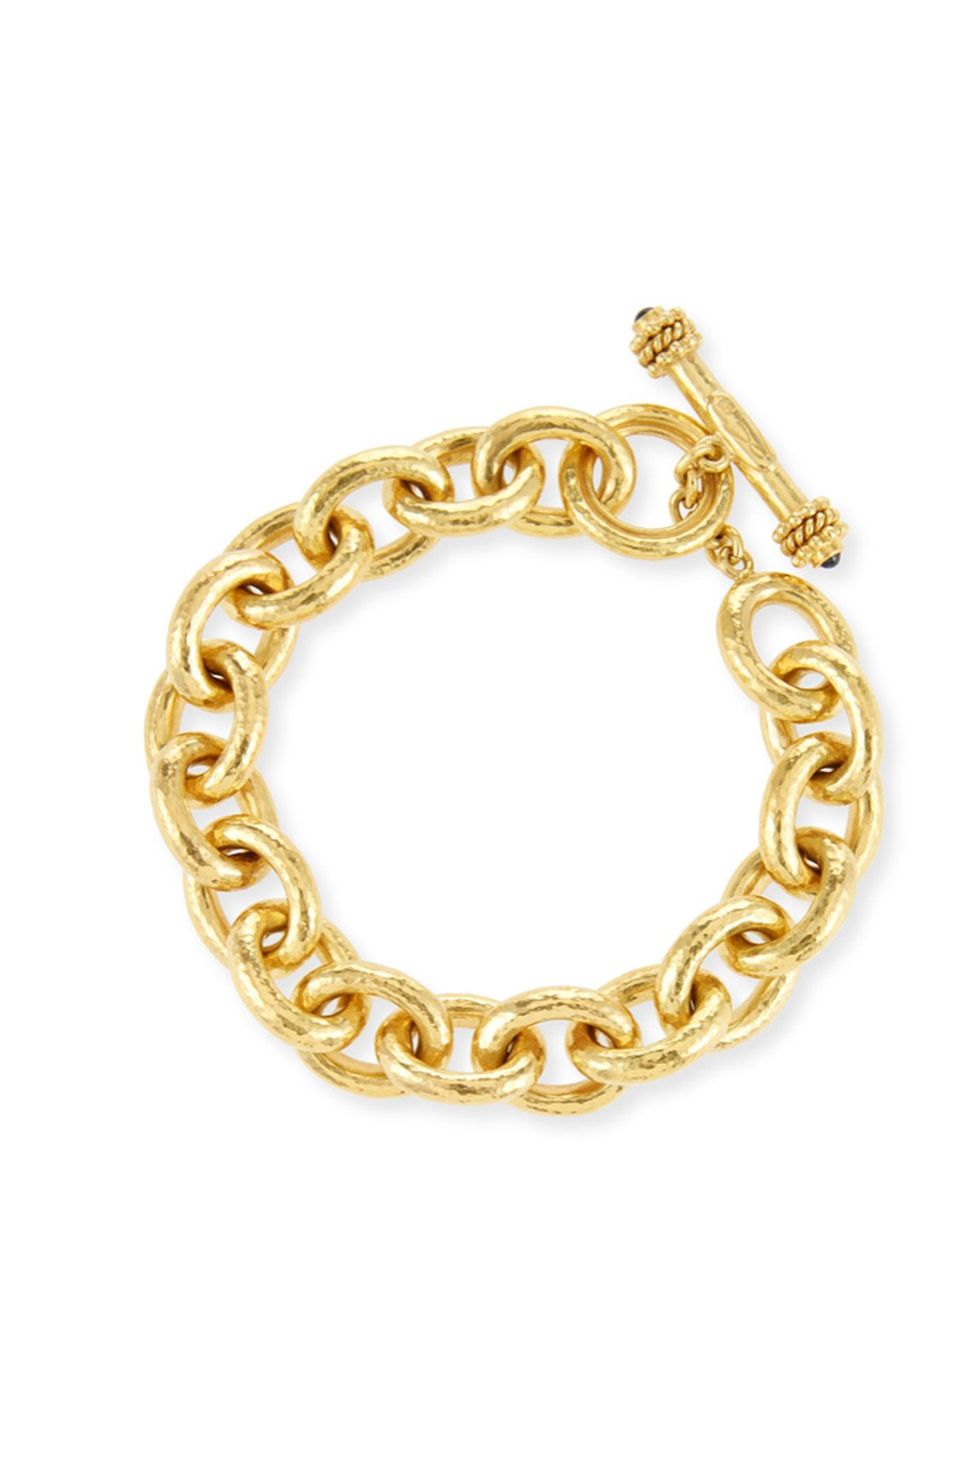 Heavy Oval Link 19k Gold Bracelet